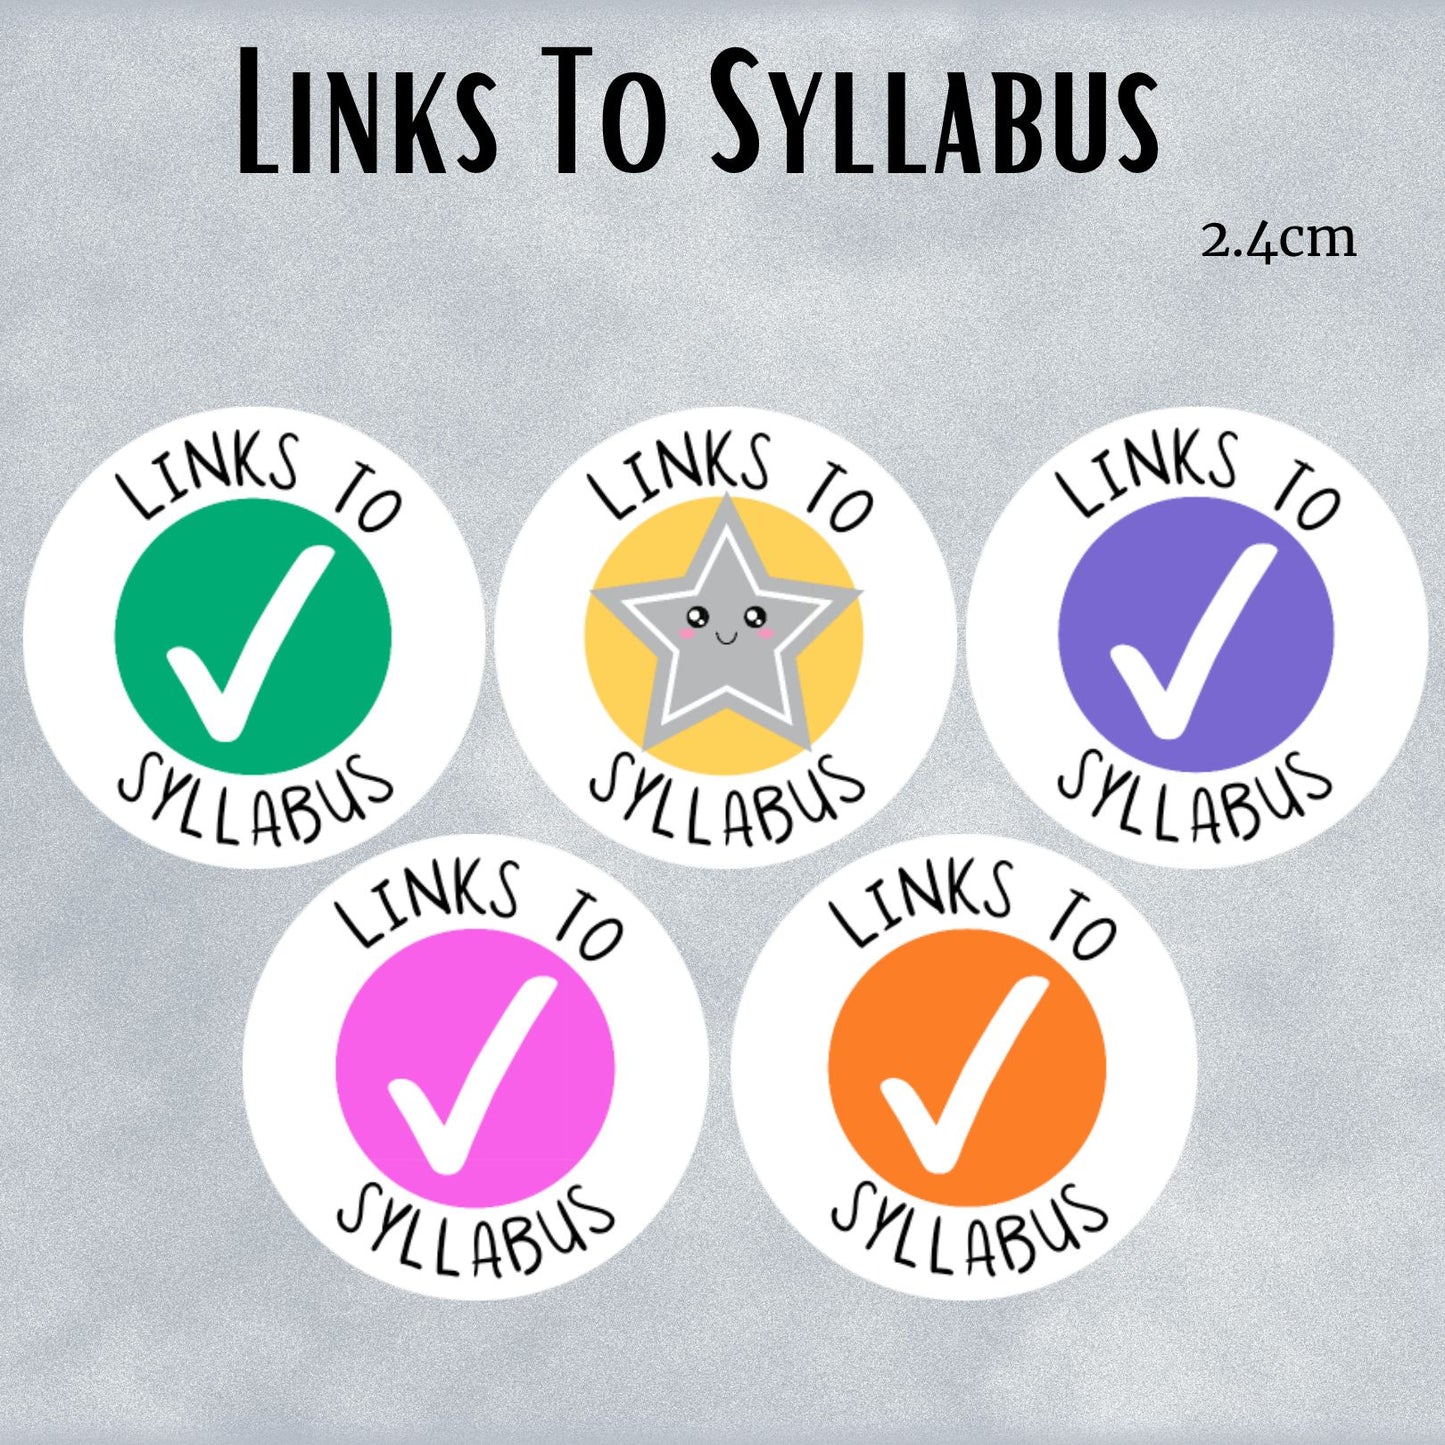 Links to Syllabus General Merit Sheet